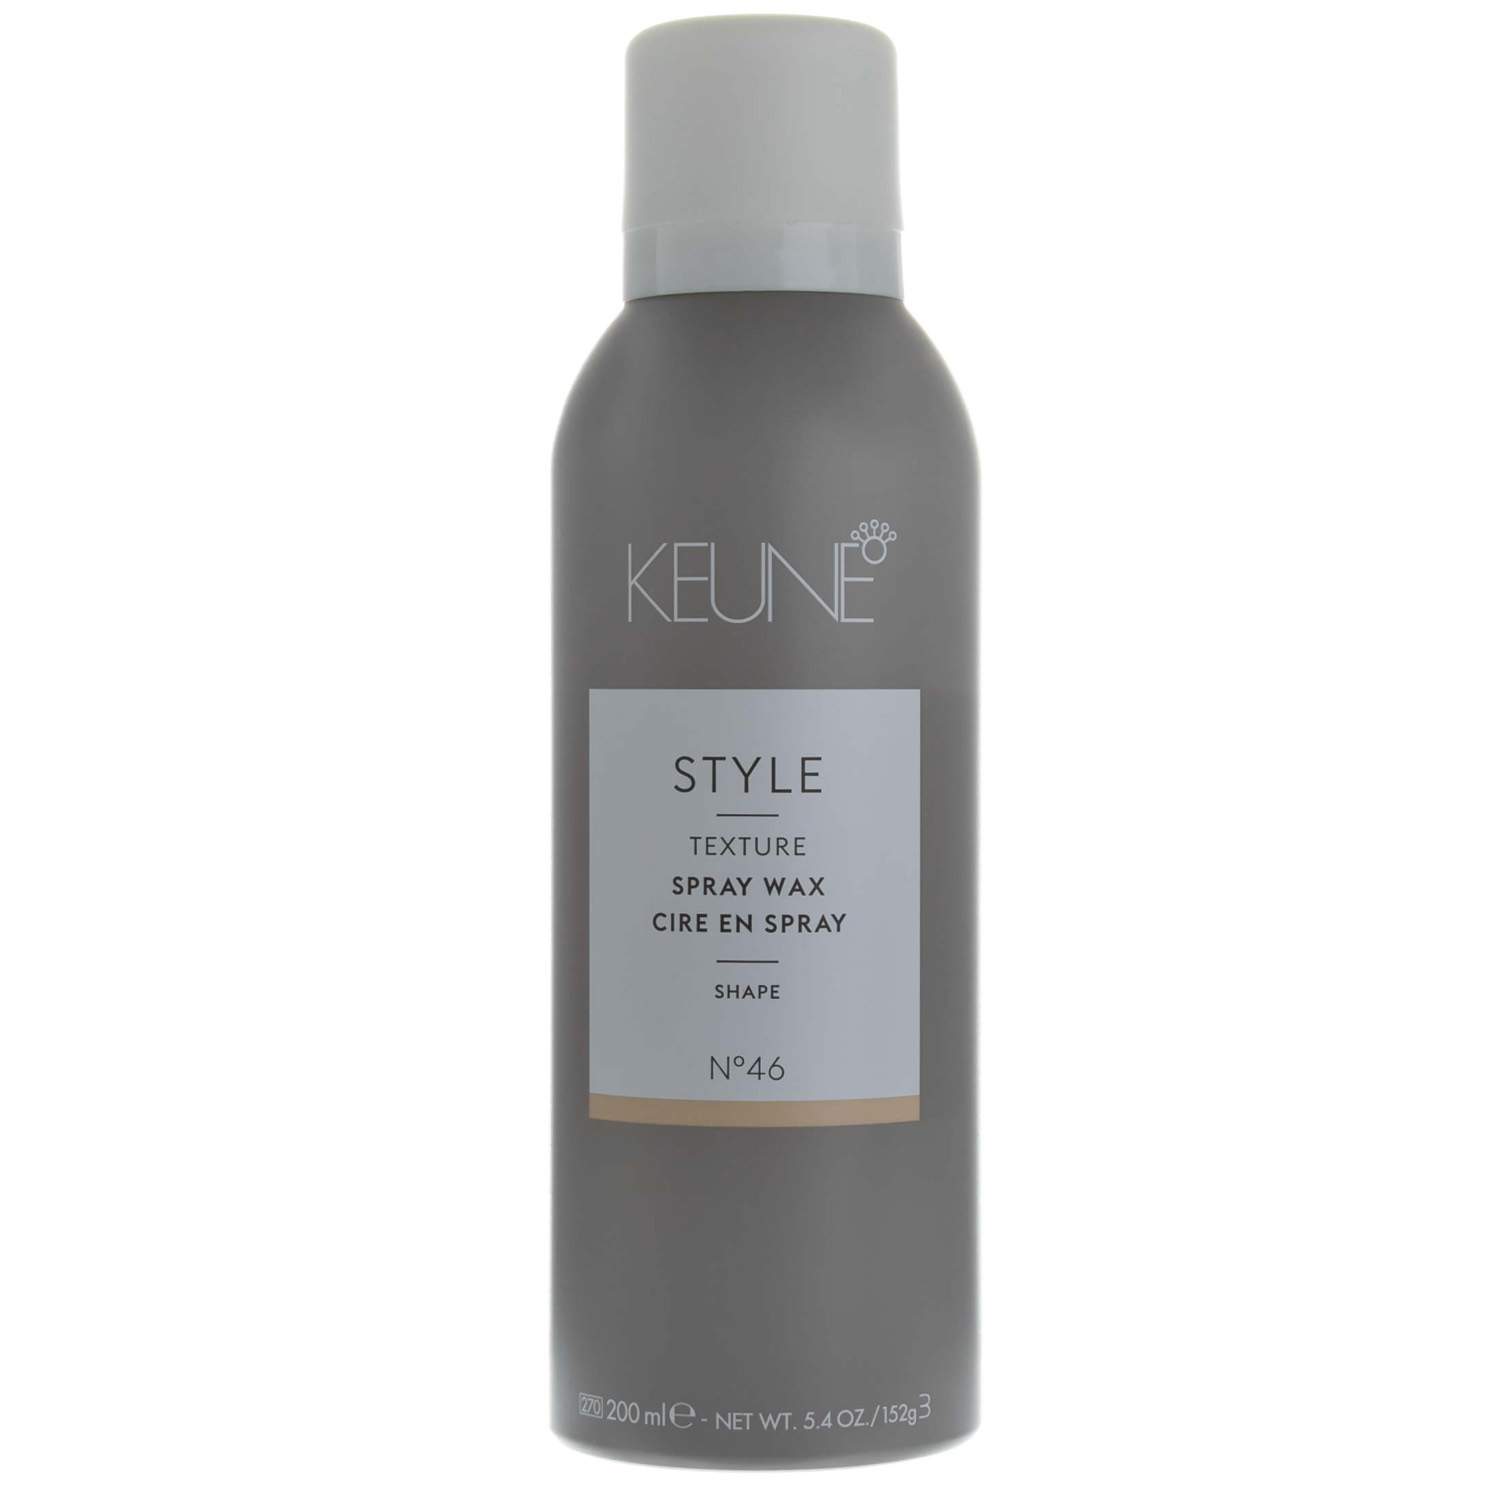 Спрей-воск Keune Style Spray Wax №46, 200 мл - отзывы покупателей на Мегамаркет | воск для волос